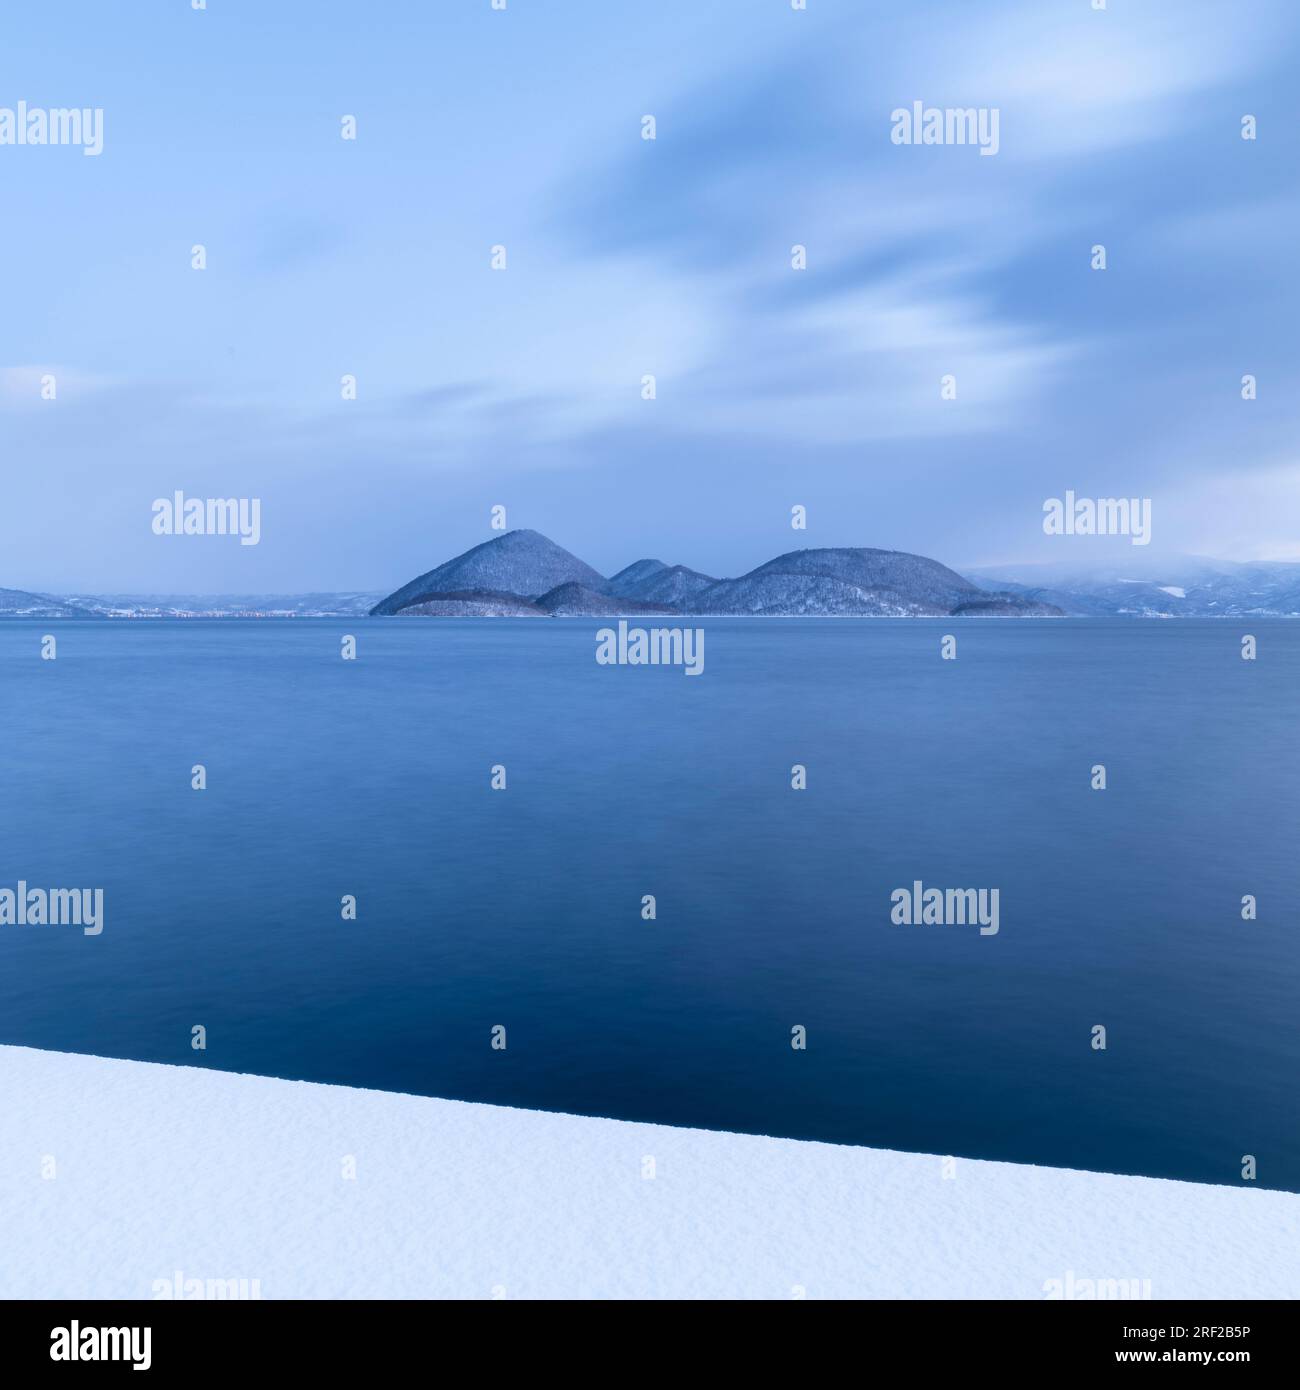 Foto a lunga esposizione dell'inverno al lago Toya, Hokkaido, Giappone Foto Stock